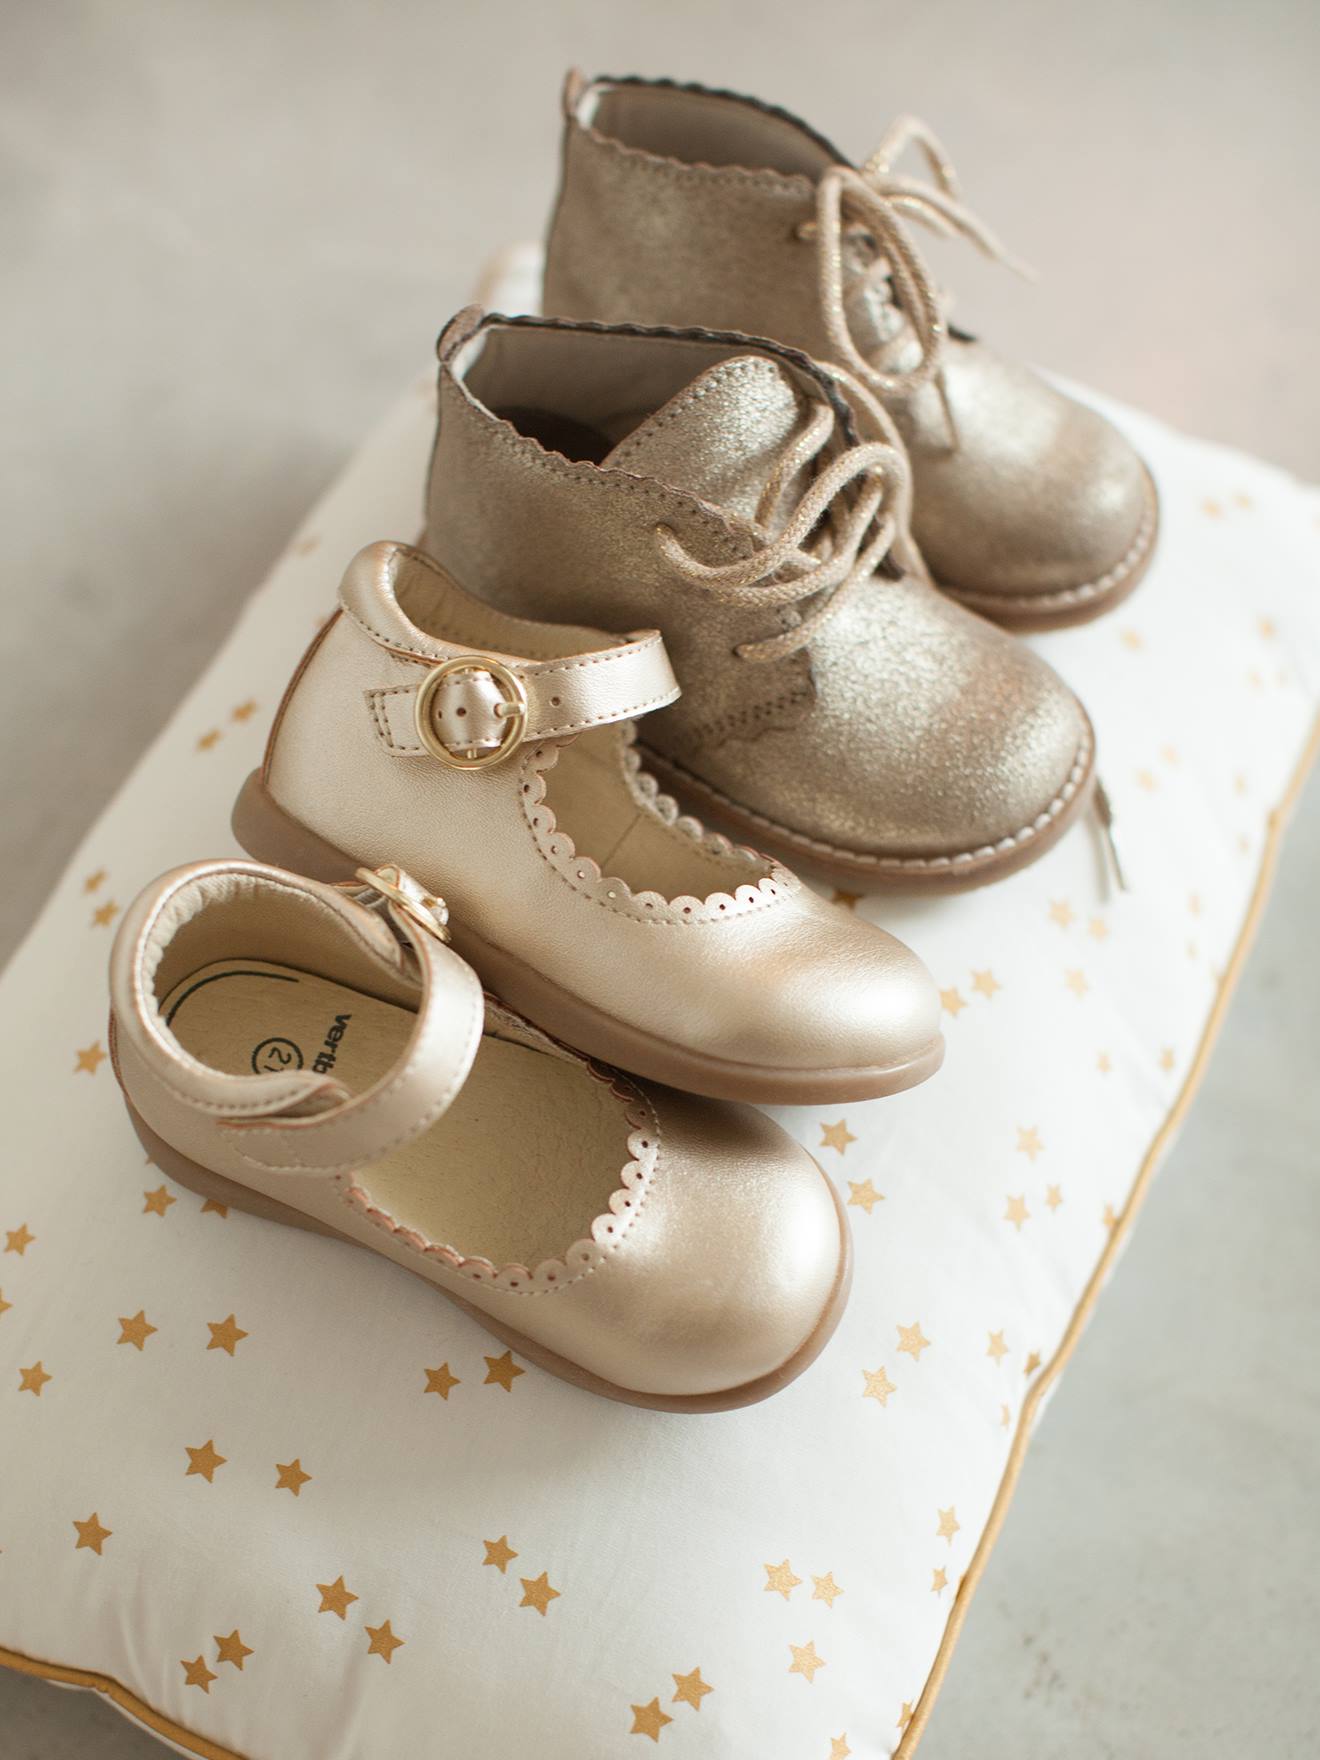 sandales premiers pas bebe fille dessus cuir brides metallisees rose  chaussures de parc bebe